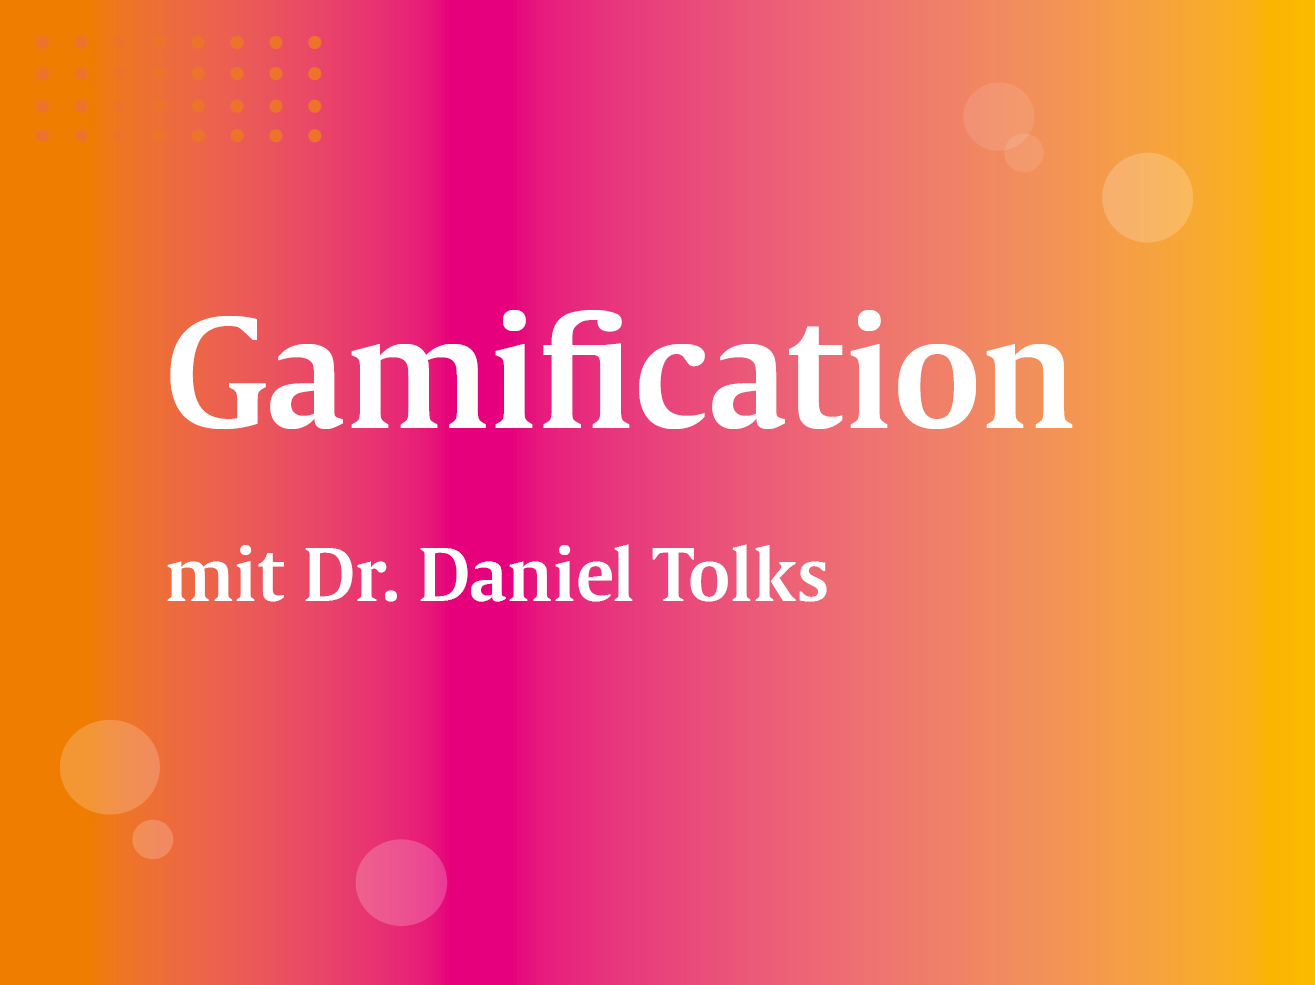 Gamification - Wie funktioniert die didaktische Einbindung von spielerischen Elementen in der Hochschullehre?